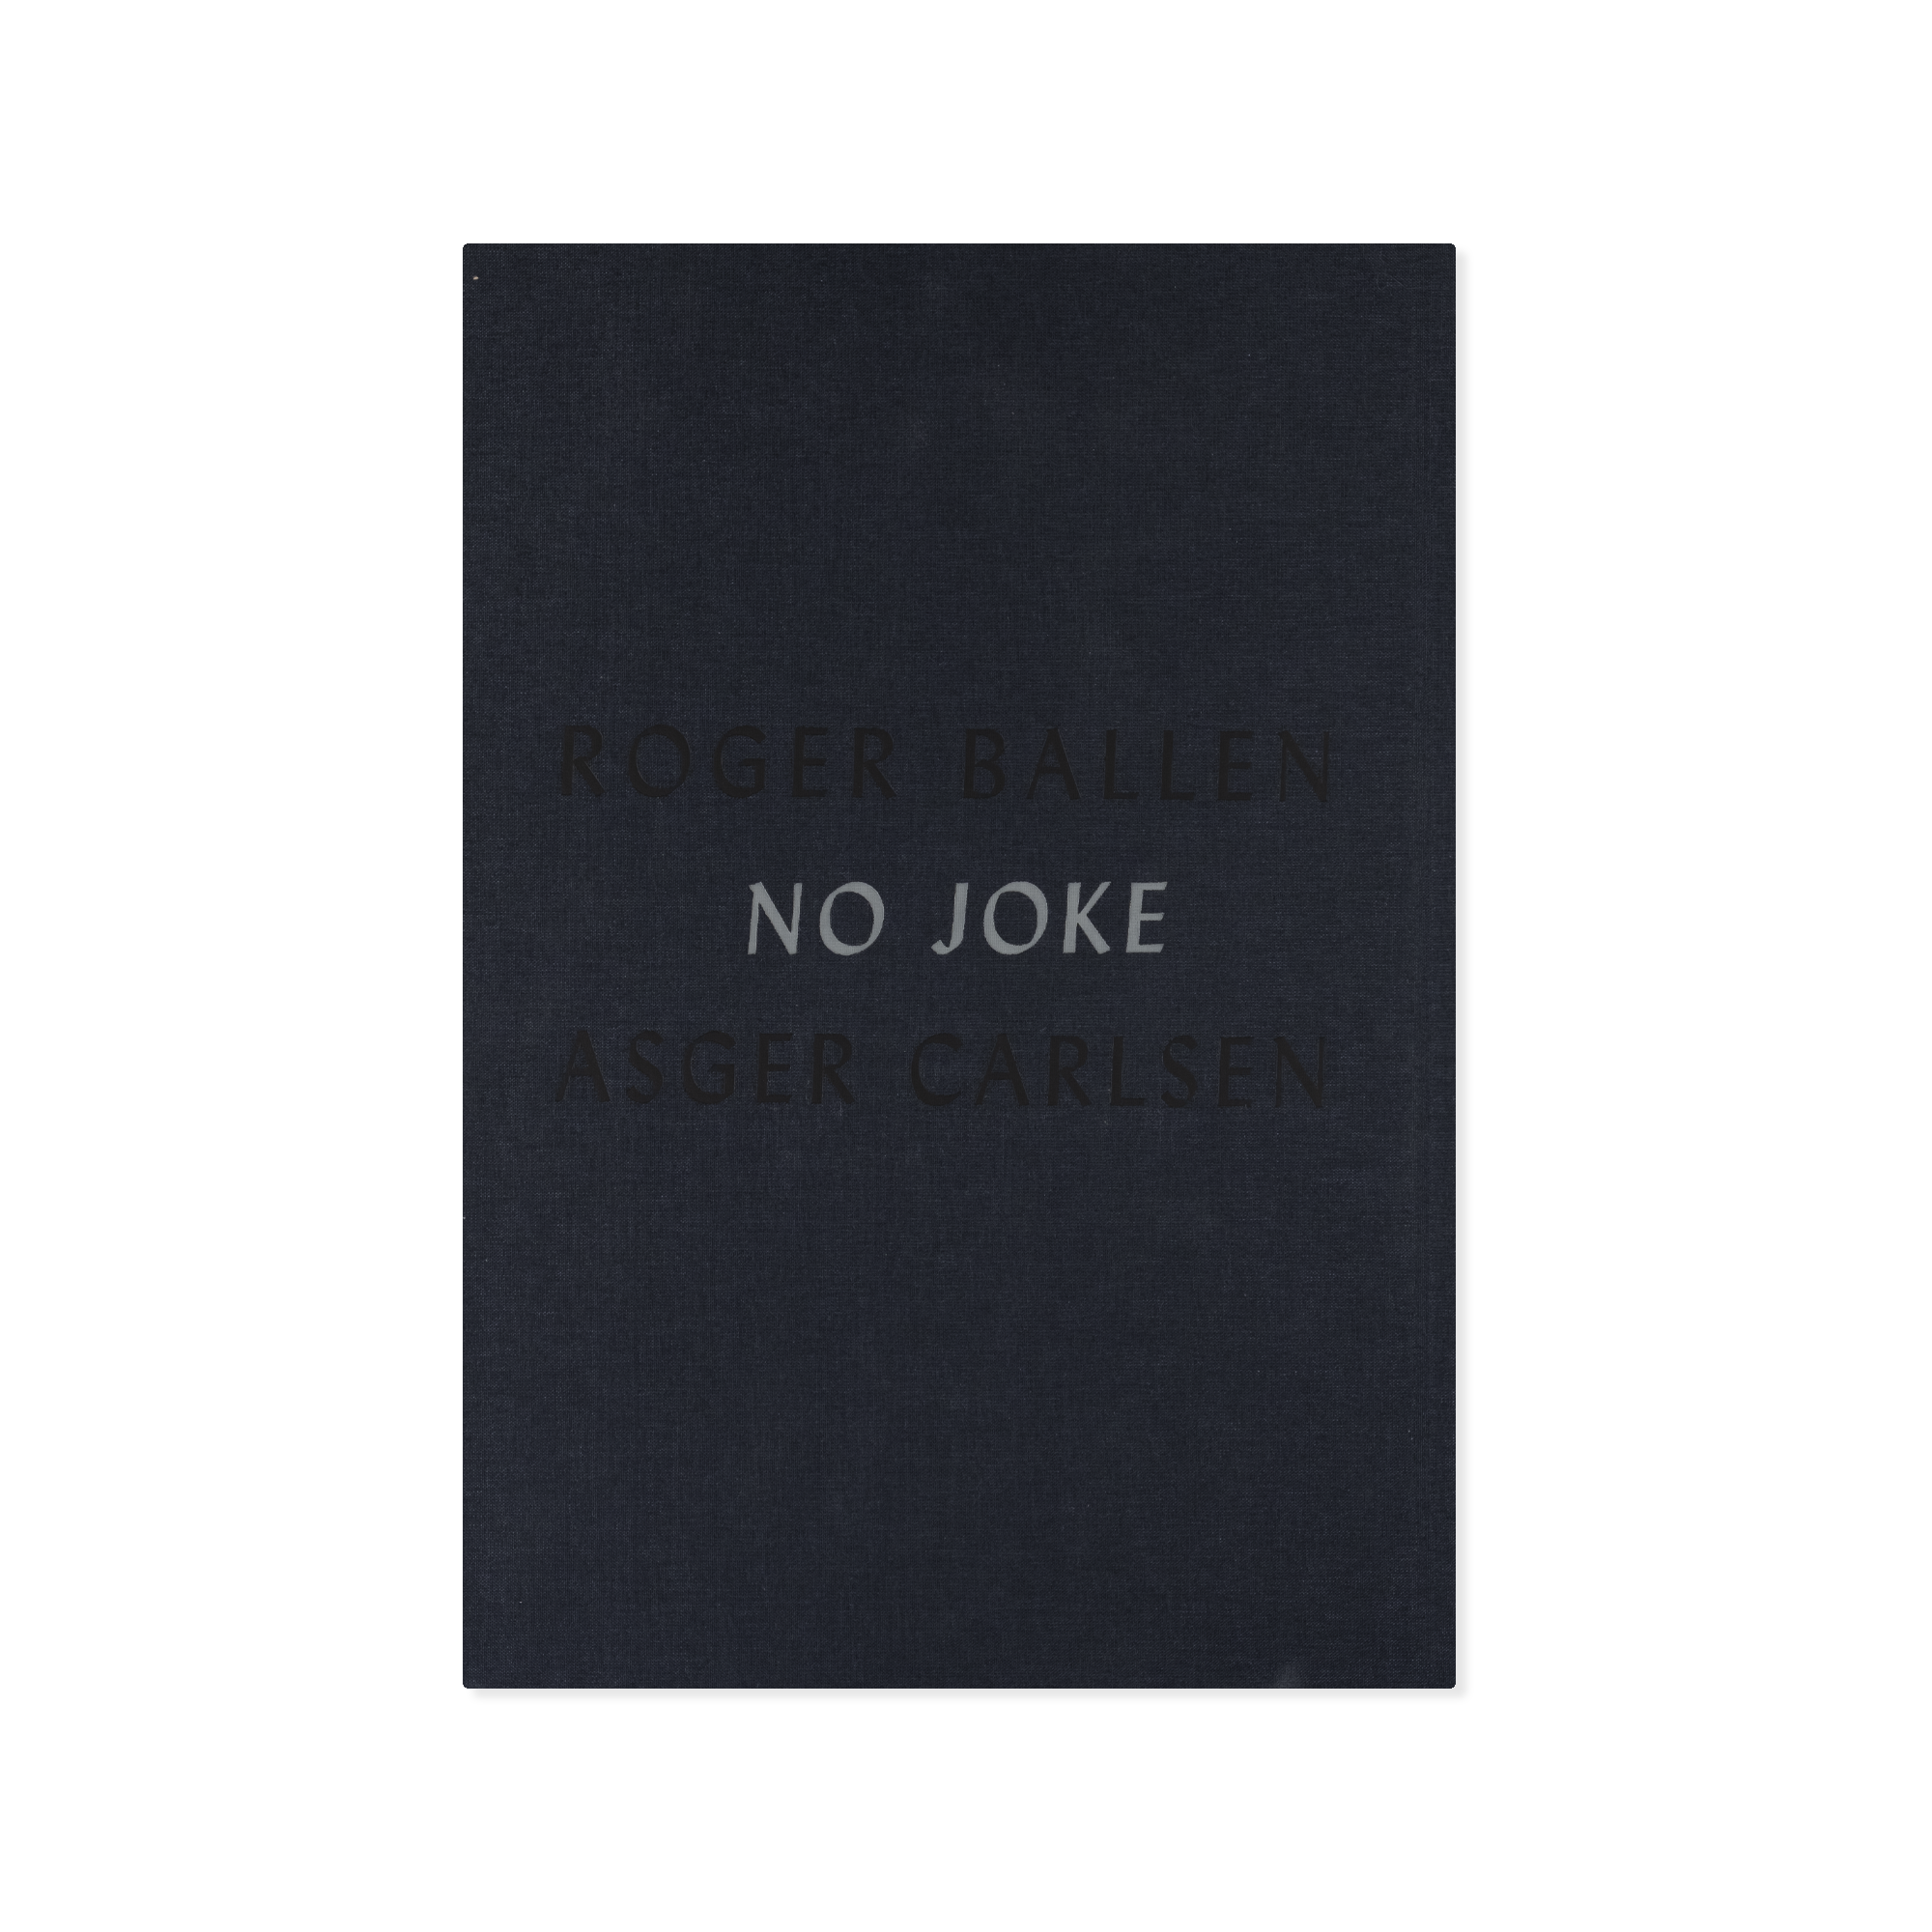 Asger Carlsen & Roger Ballen — No Joke